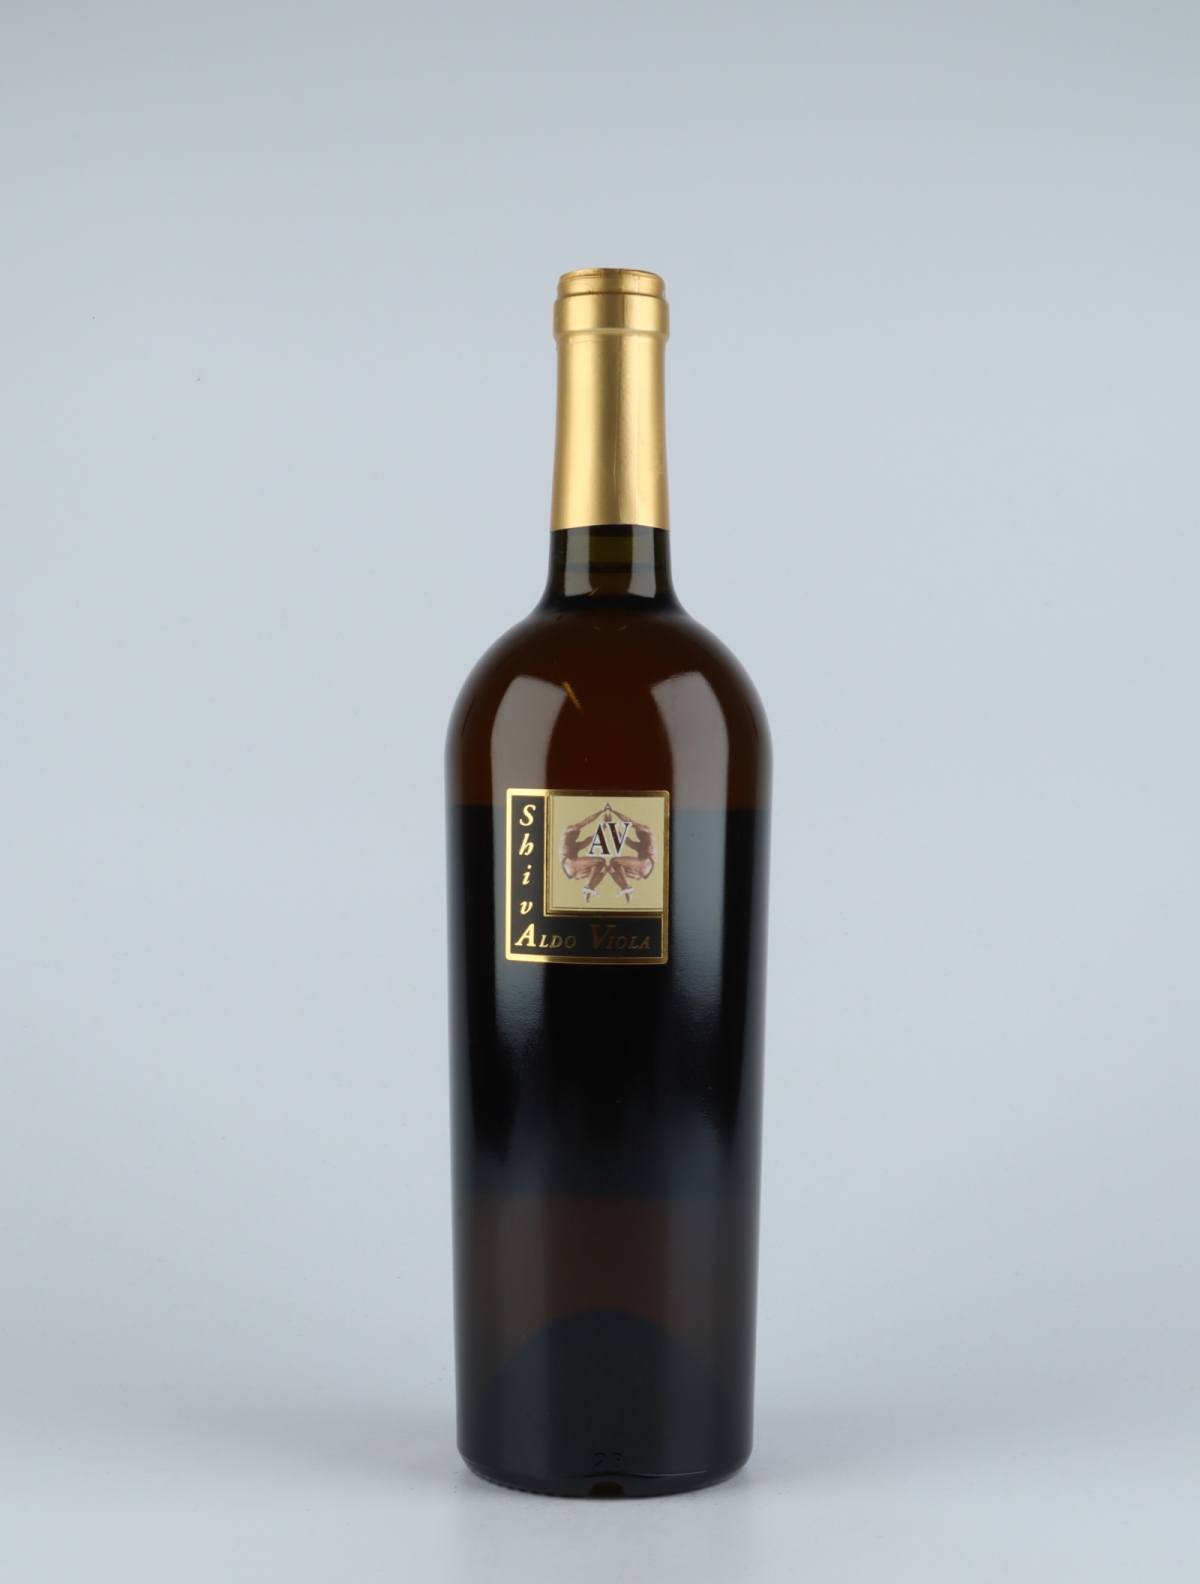 A bottle 2017 Shiva Catarratto White wine from Aldo Viola, Sicily in Italy